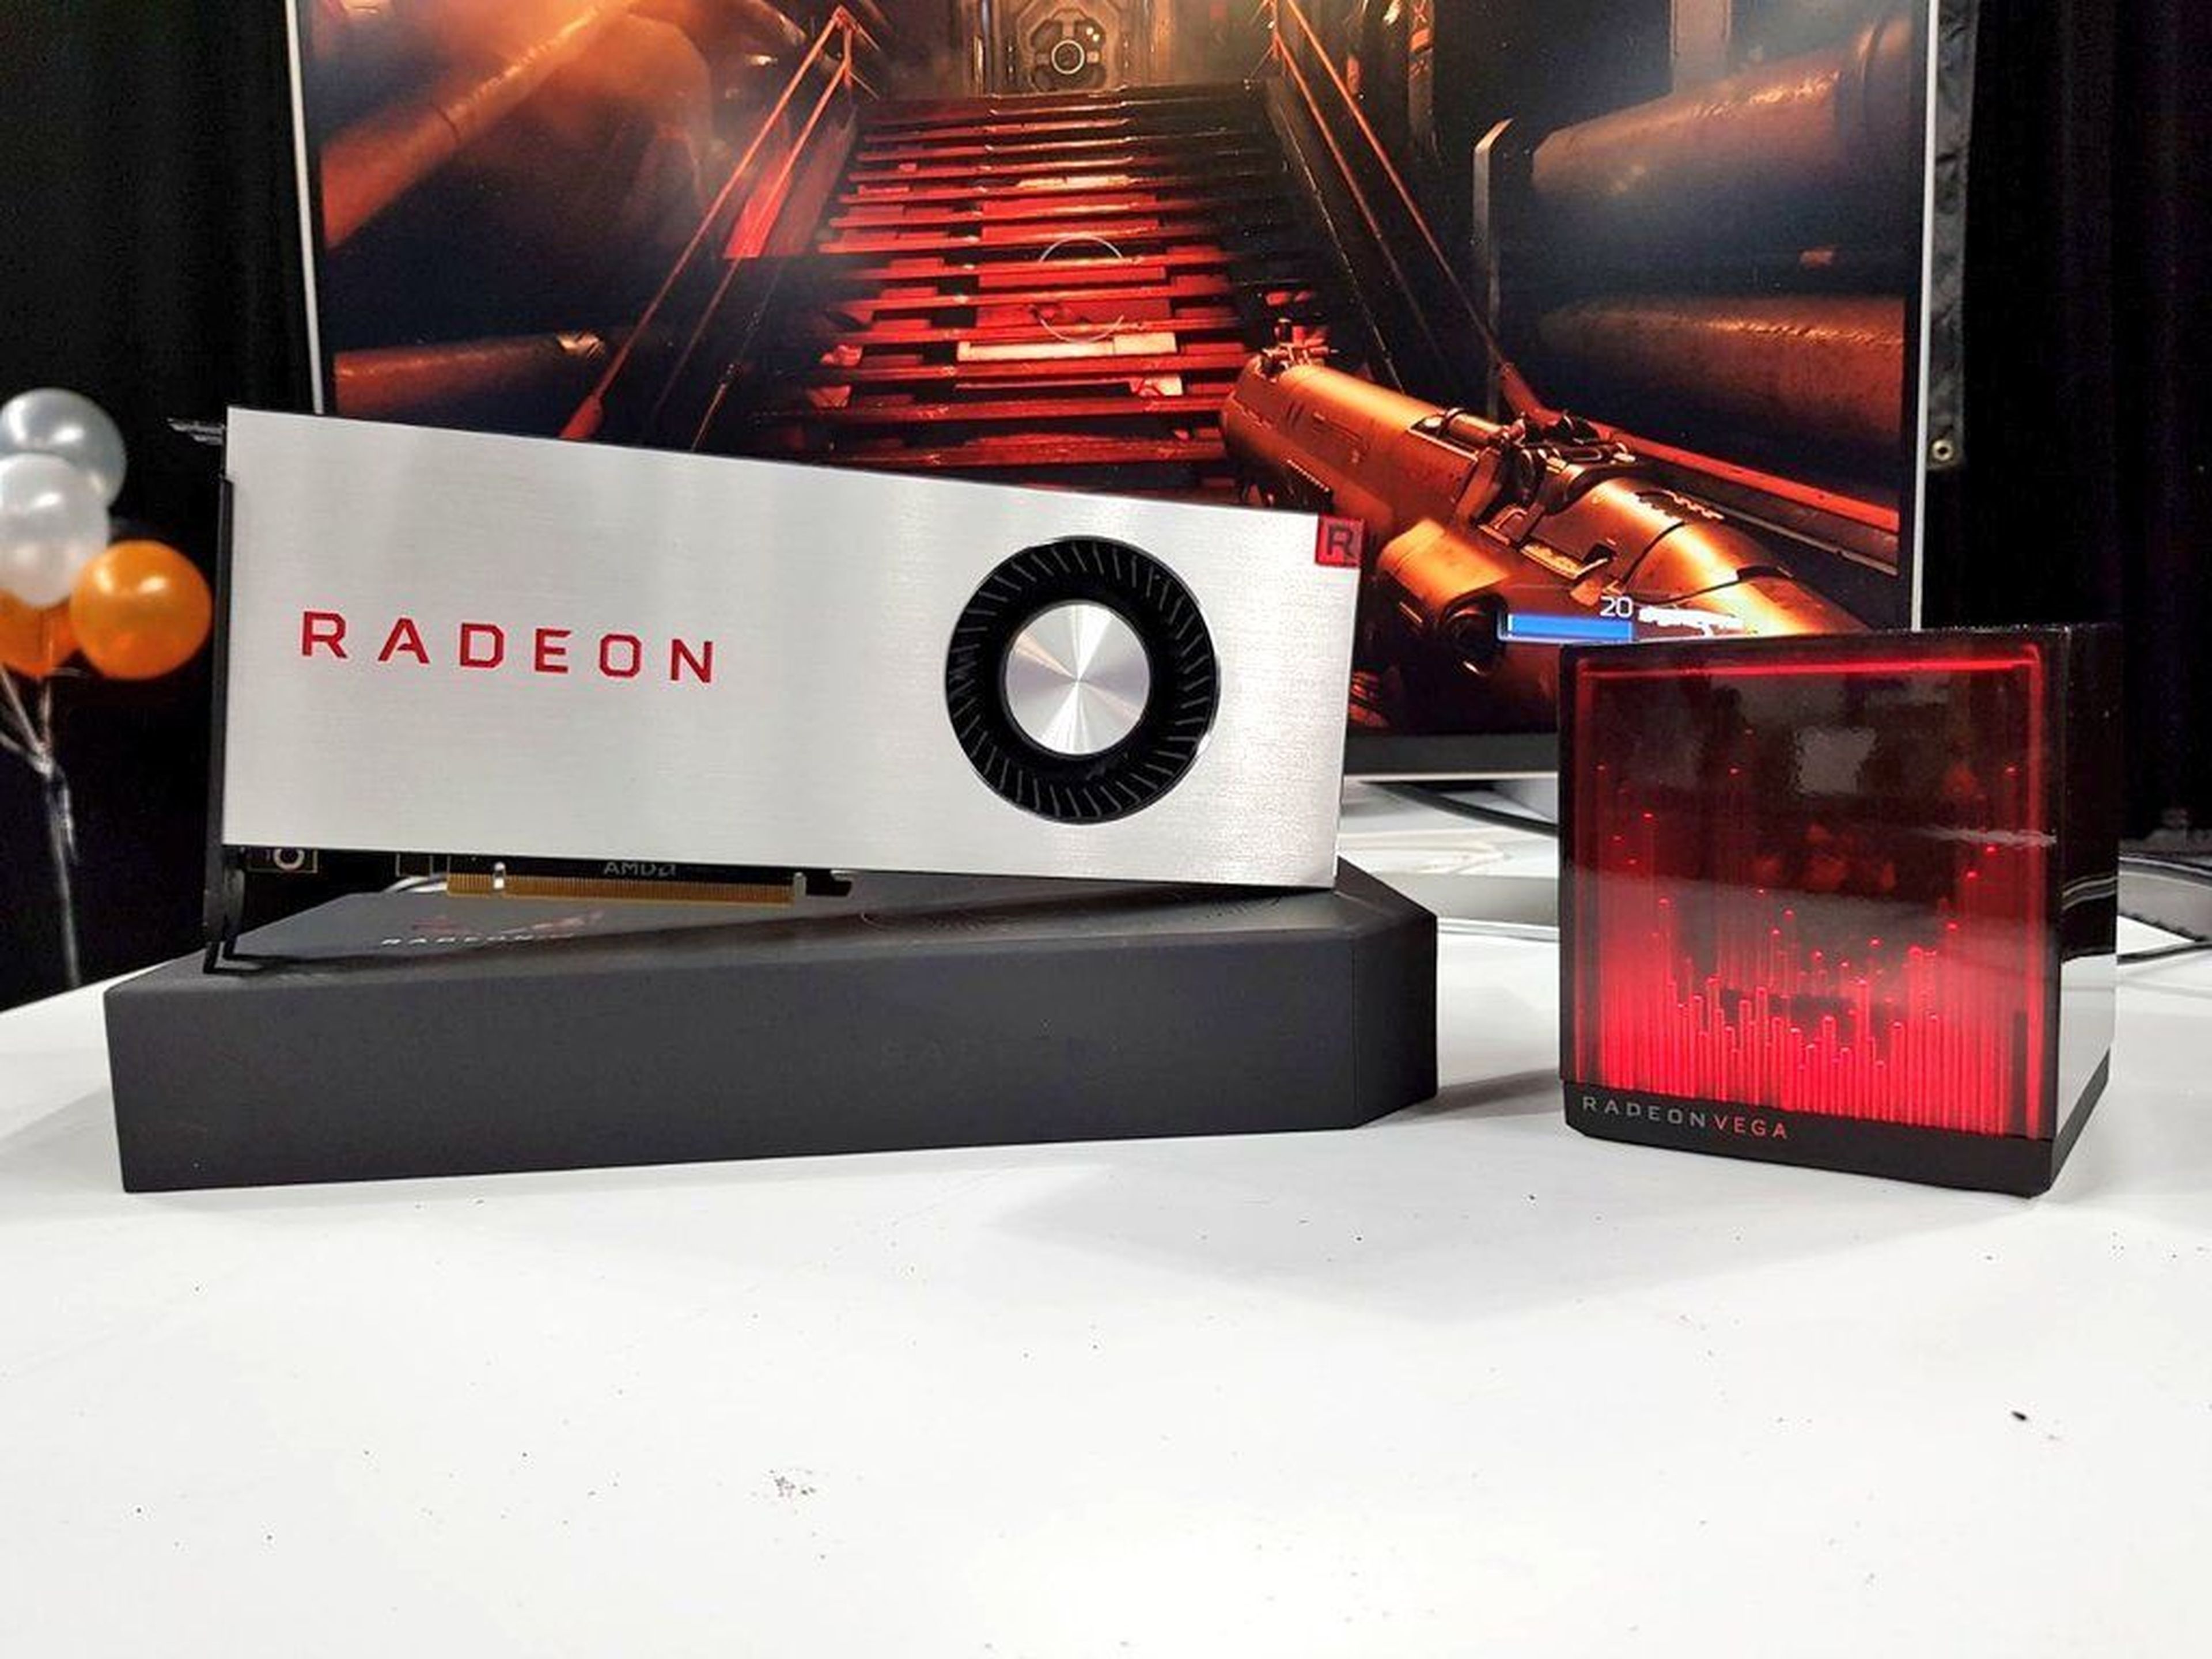 Un misterioso holocubo junto a la nueva AMD Radeon Vega RX ha despertado la curiosidad de muchos